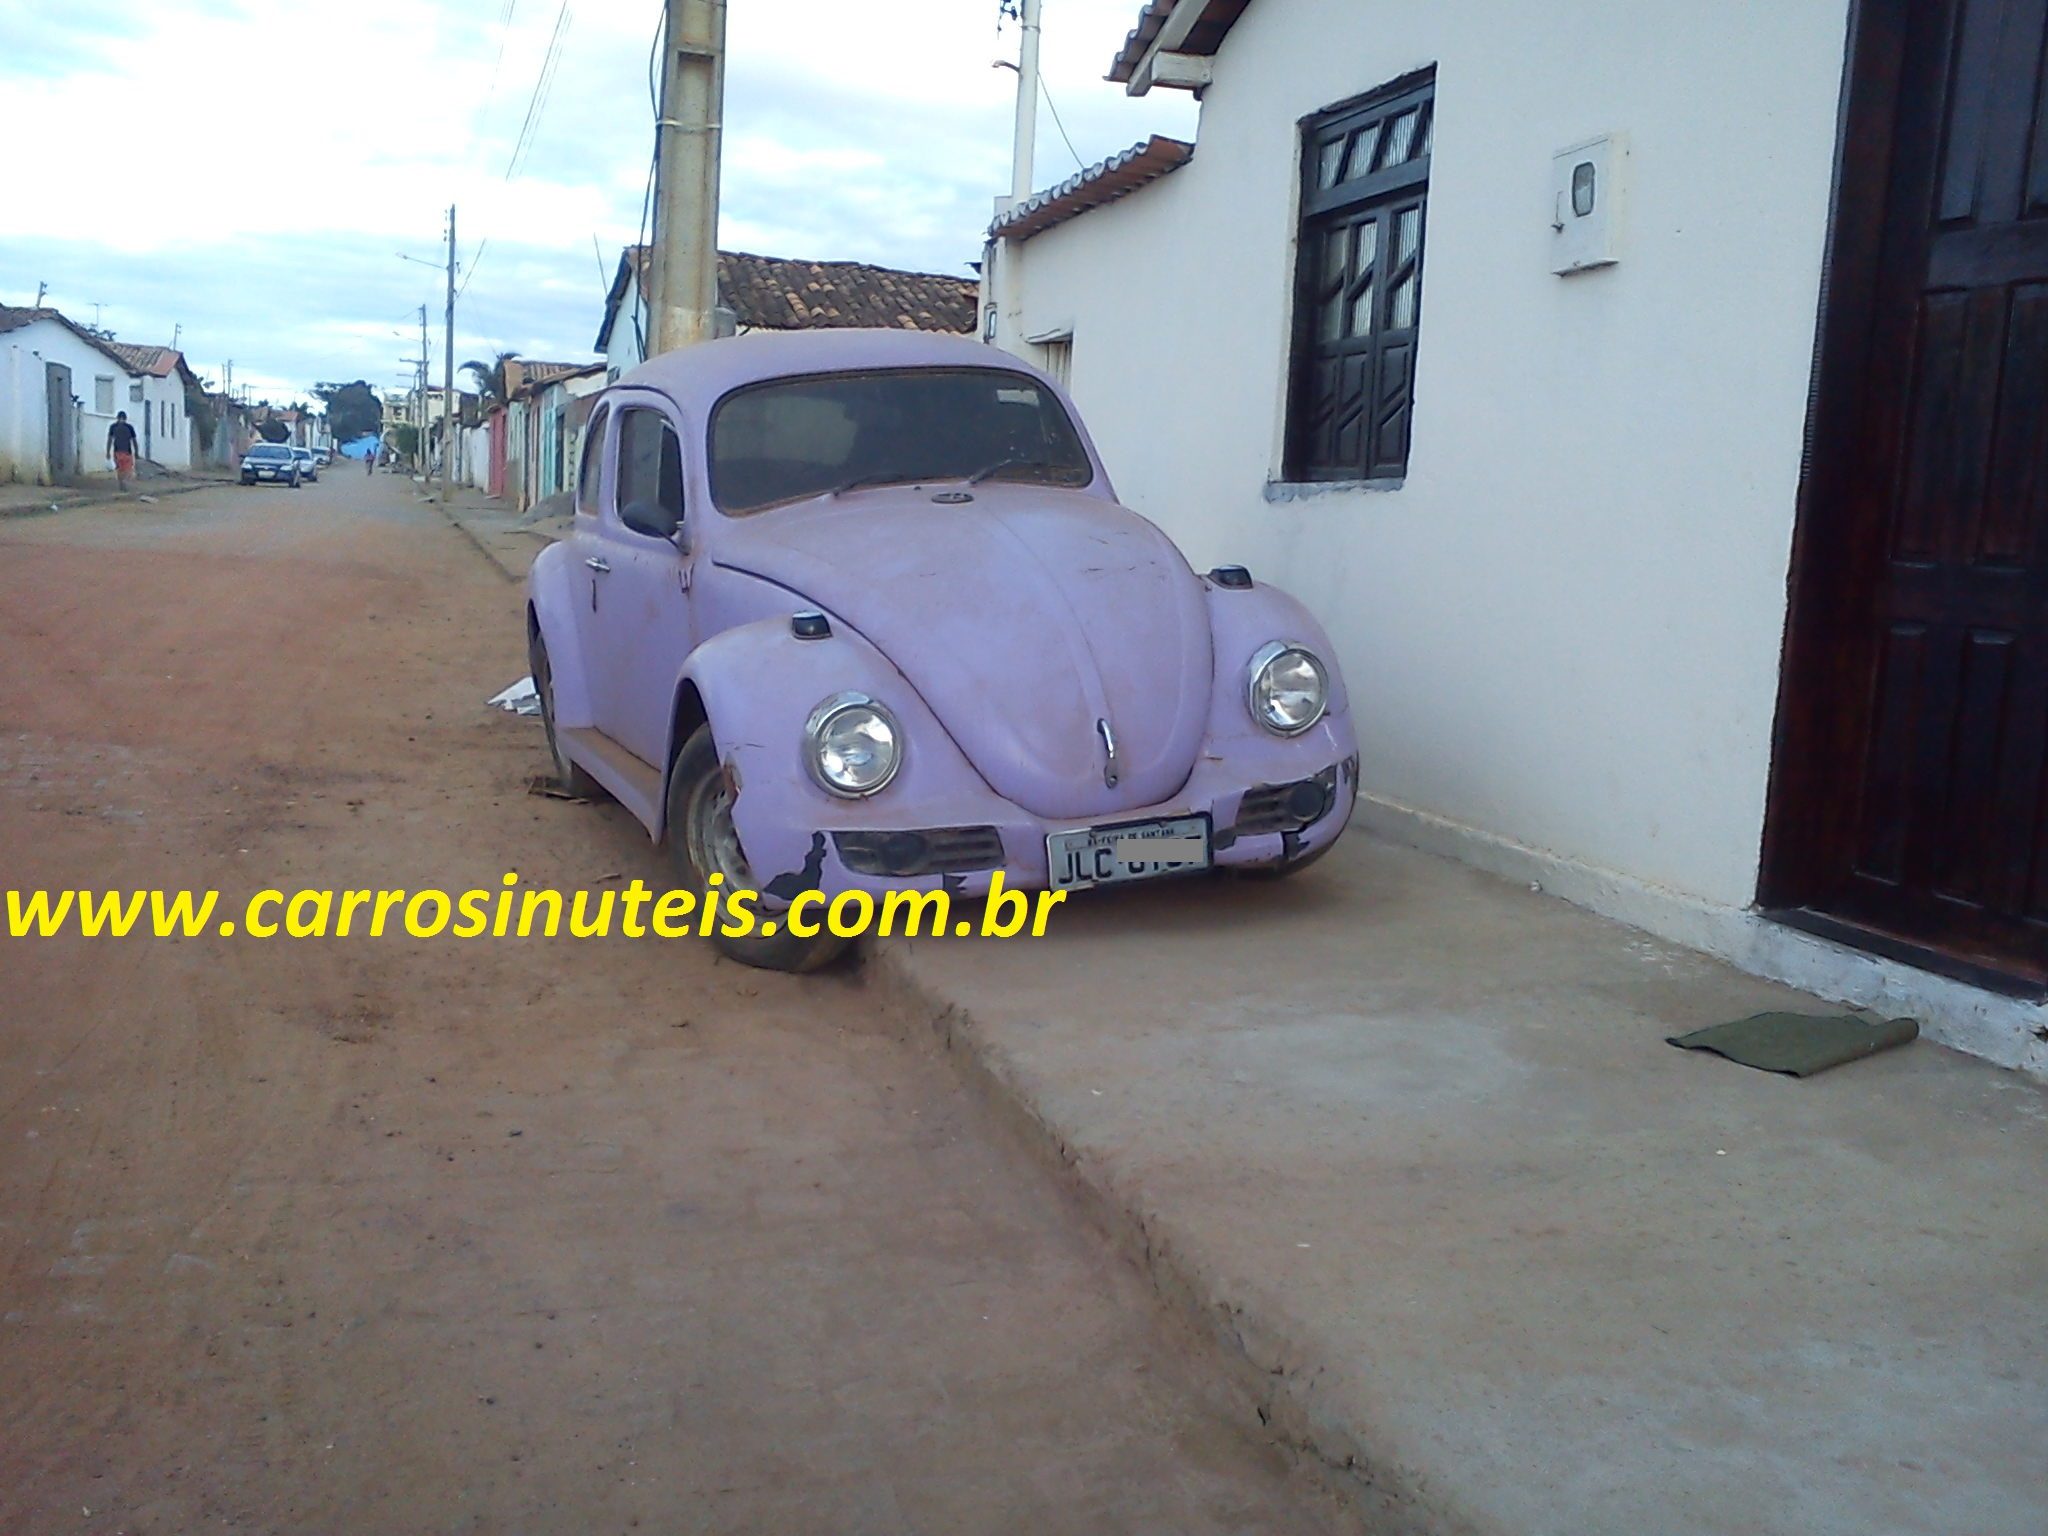 VW Fusca – Maracás, Bahia, by Junin